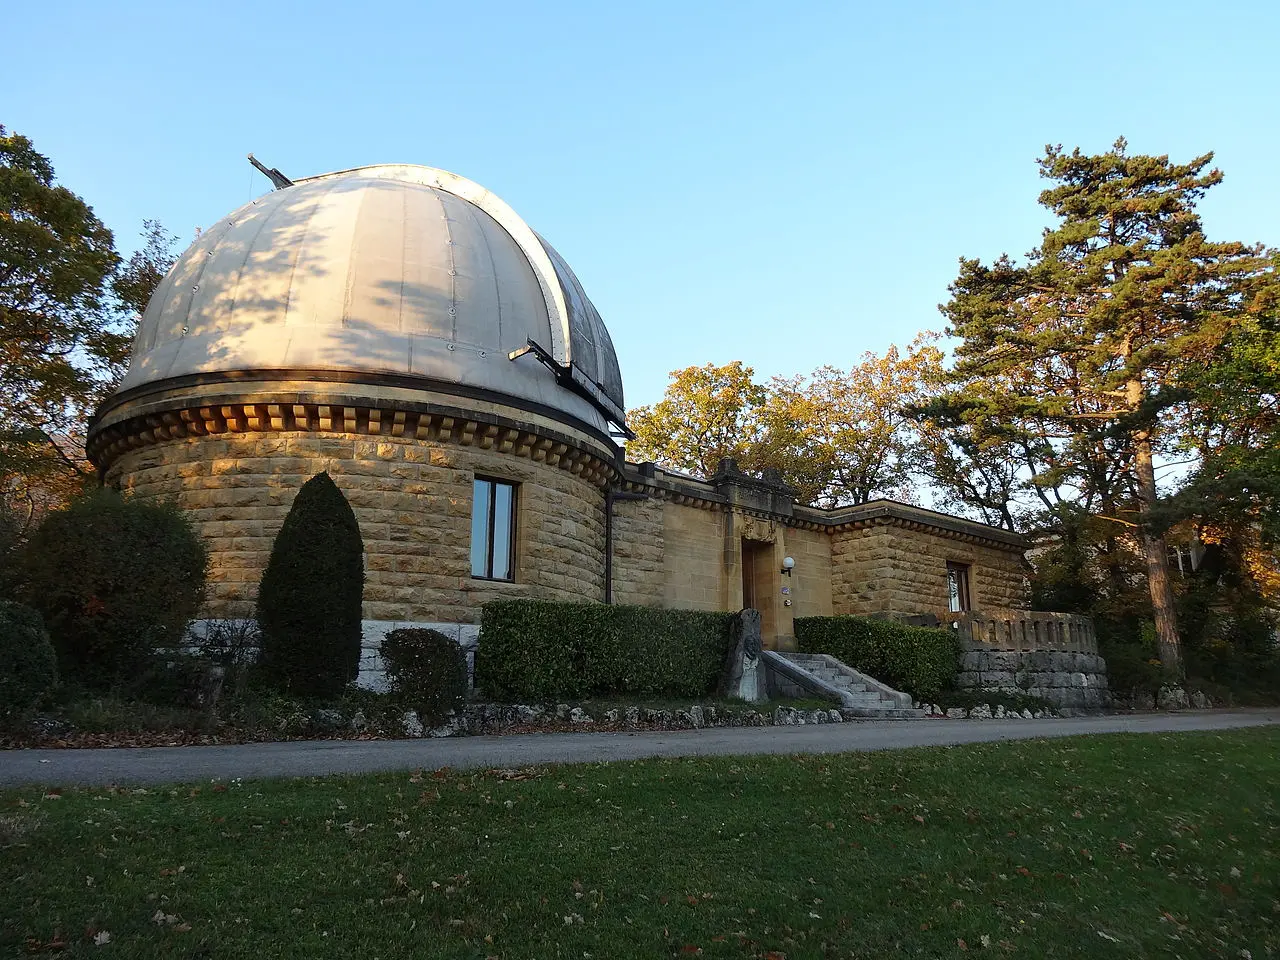 The Neuchatel Observatory